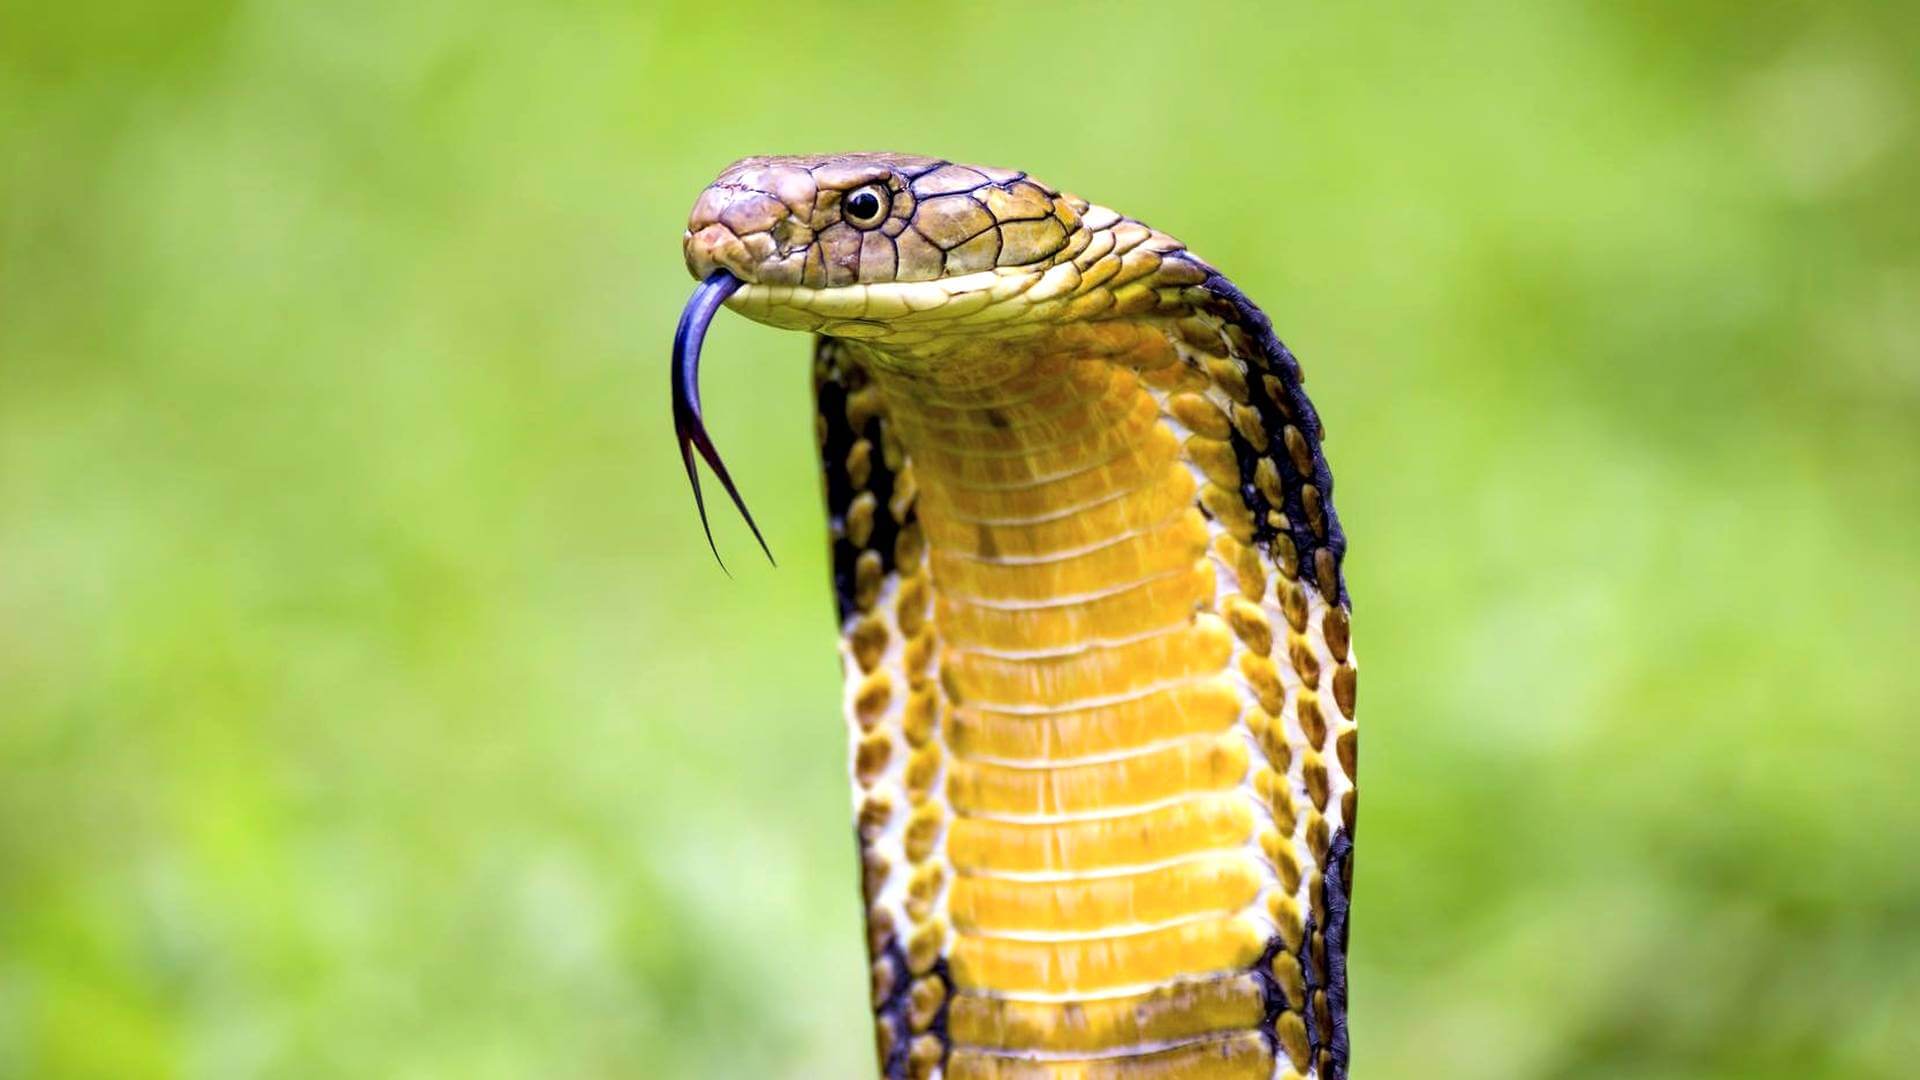 Ядовитая змея кобра (описание, питание, ареал обитания)